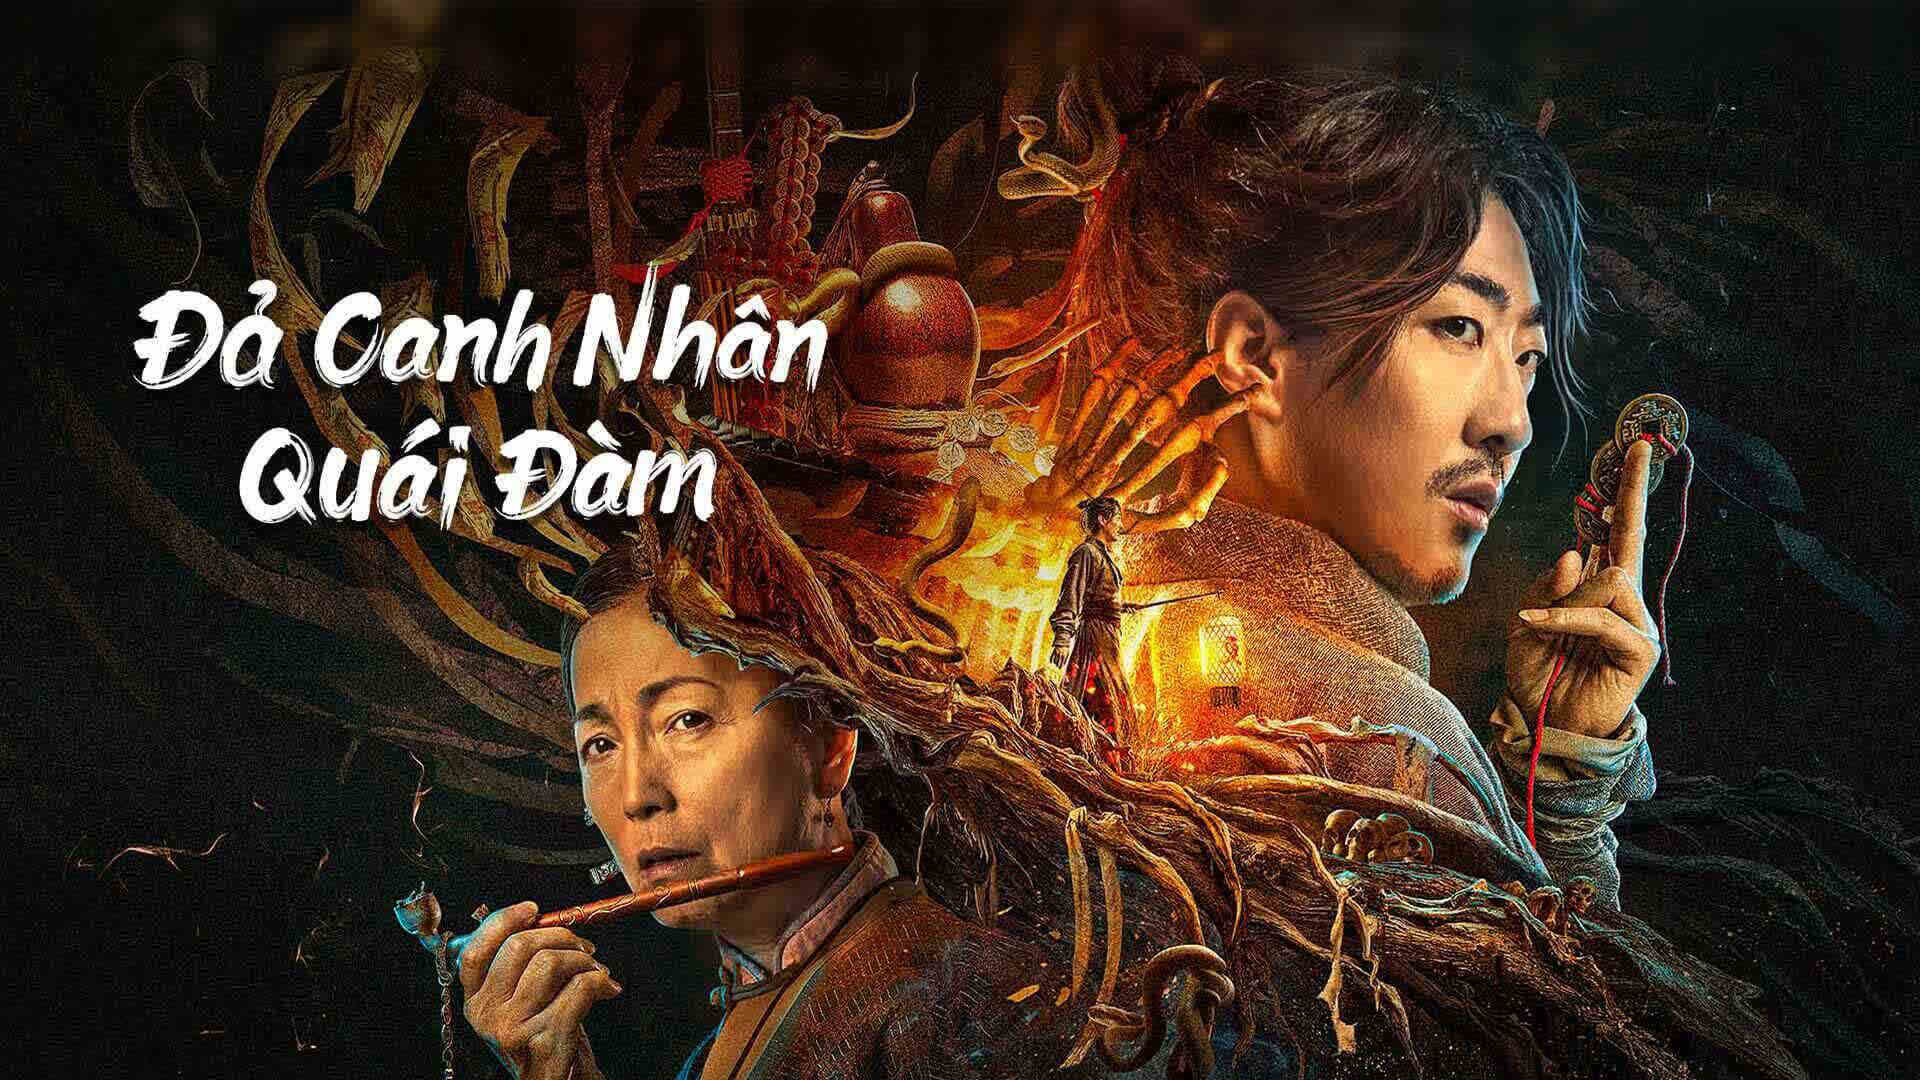 Banner Phim Đả Canh Nhân Quái Đàm (the story of the night watcher)